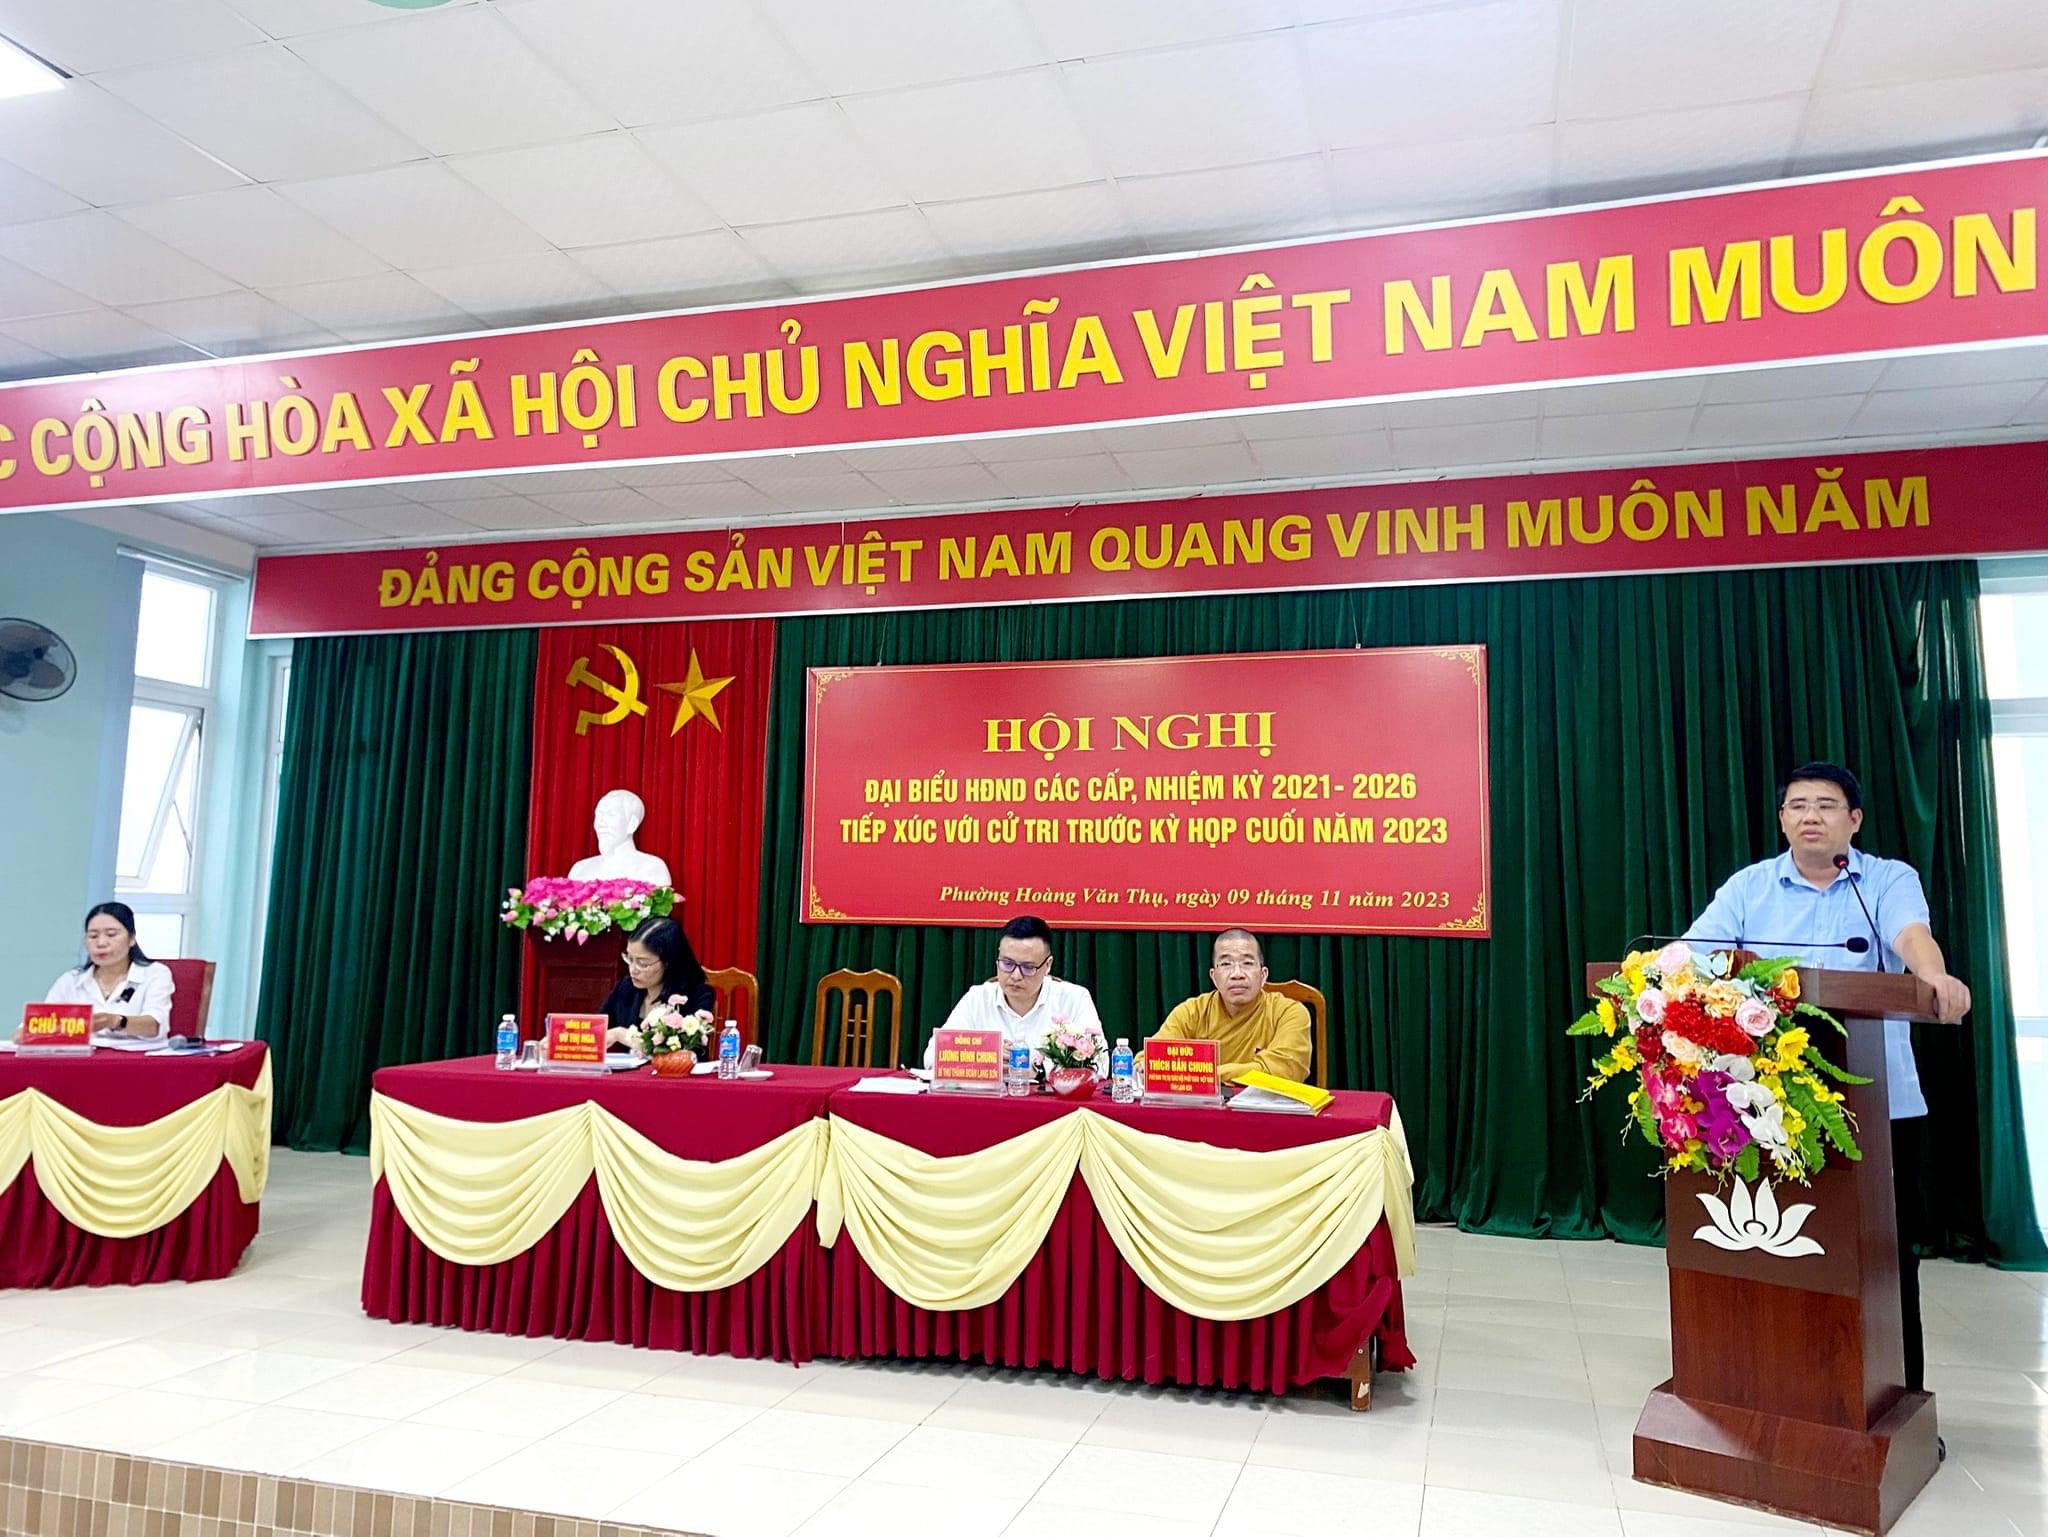  Phường Hoàng Văn Thụ: UBMTTQ phường phối hợp tổ chức Hội nghị đại biểu HĐND các cấp tiếp xúc với cử tri trước kỳ họp thường lệ cuối năm 2023.